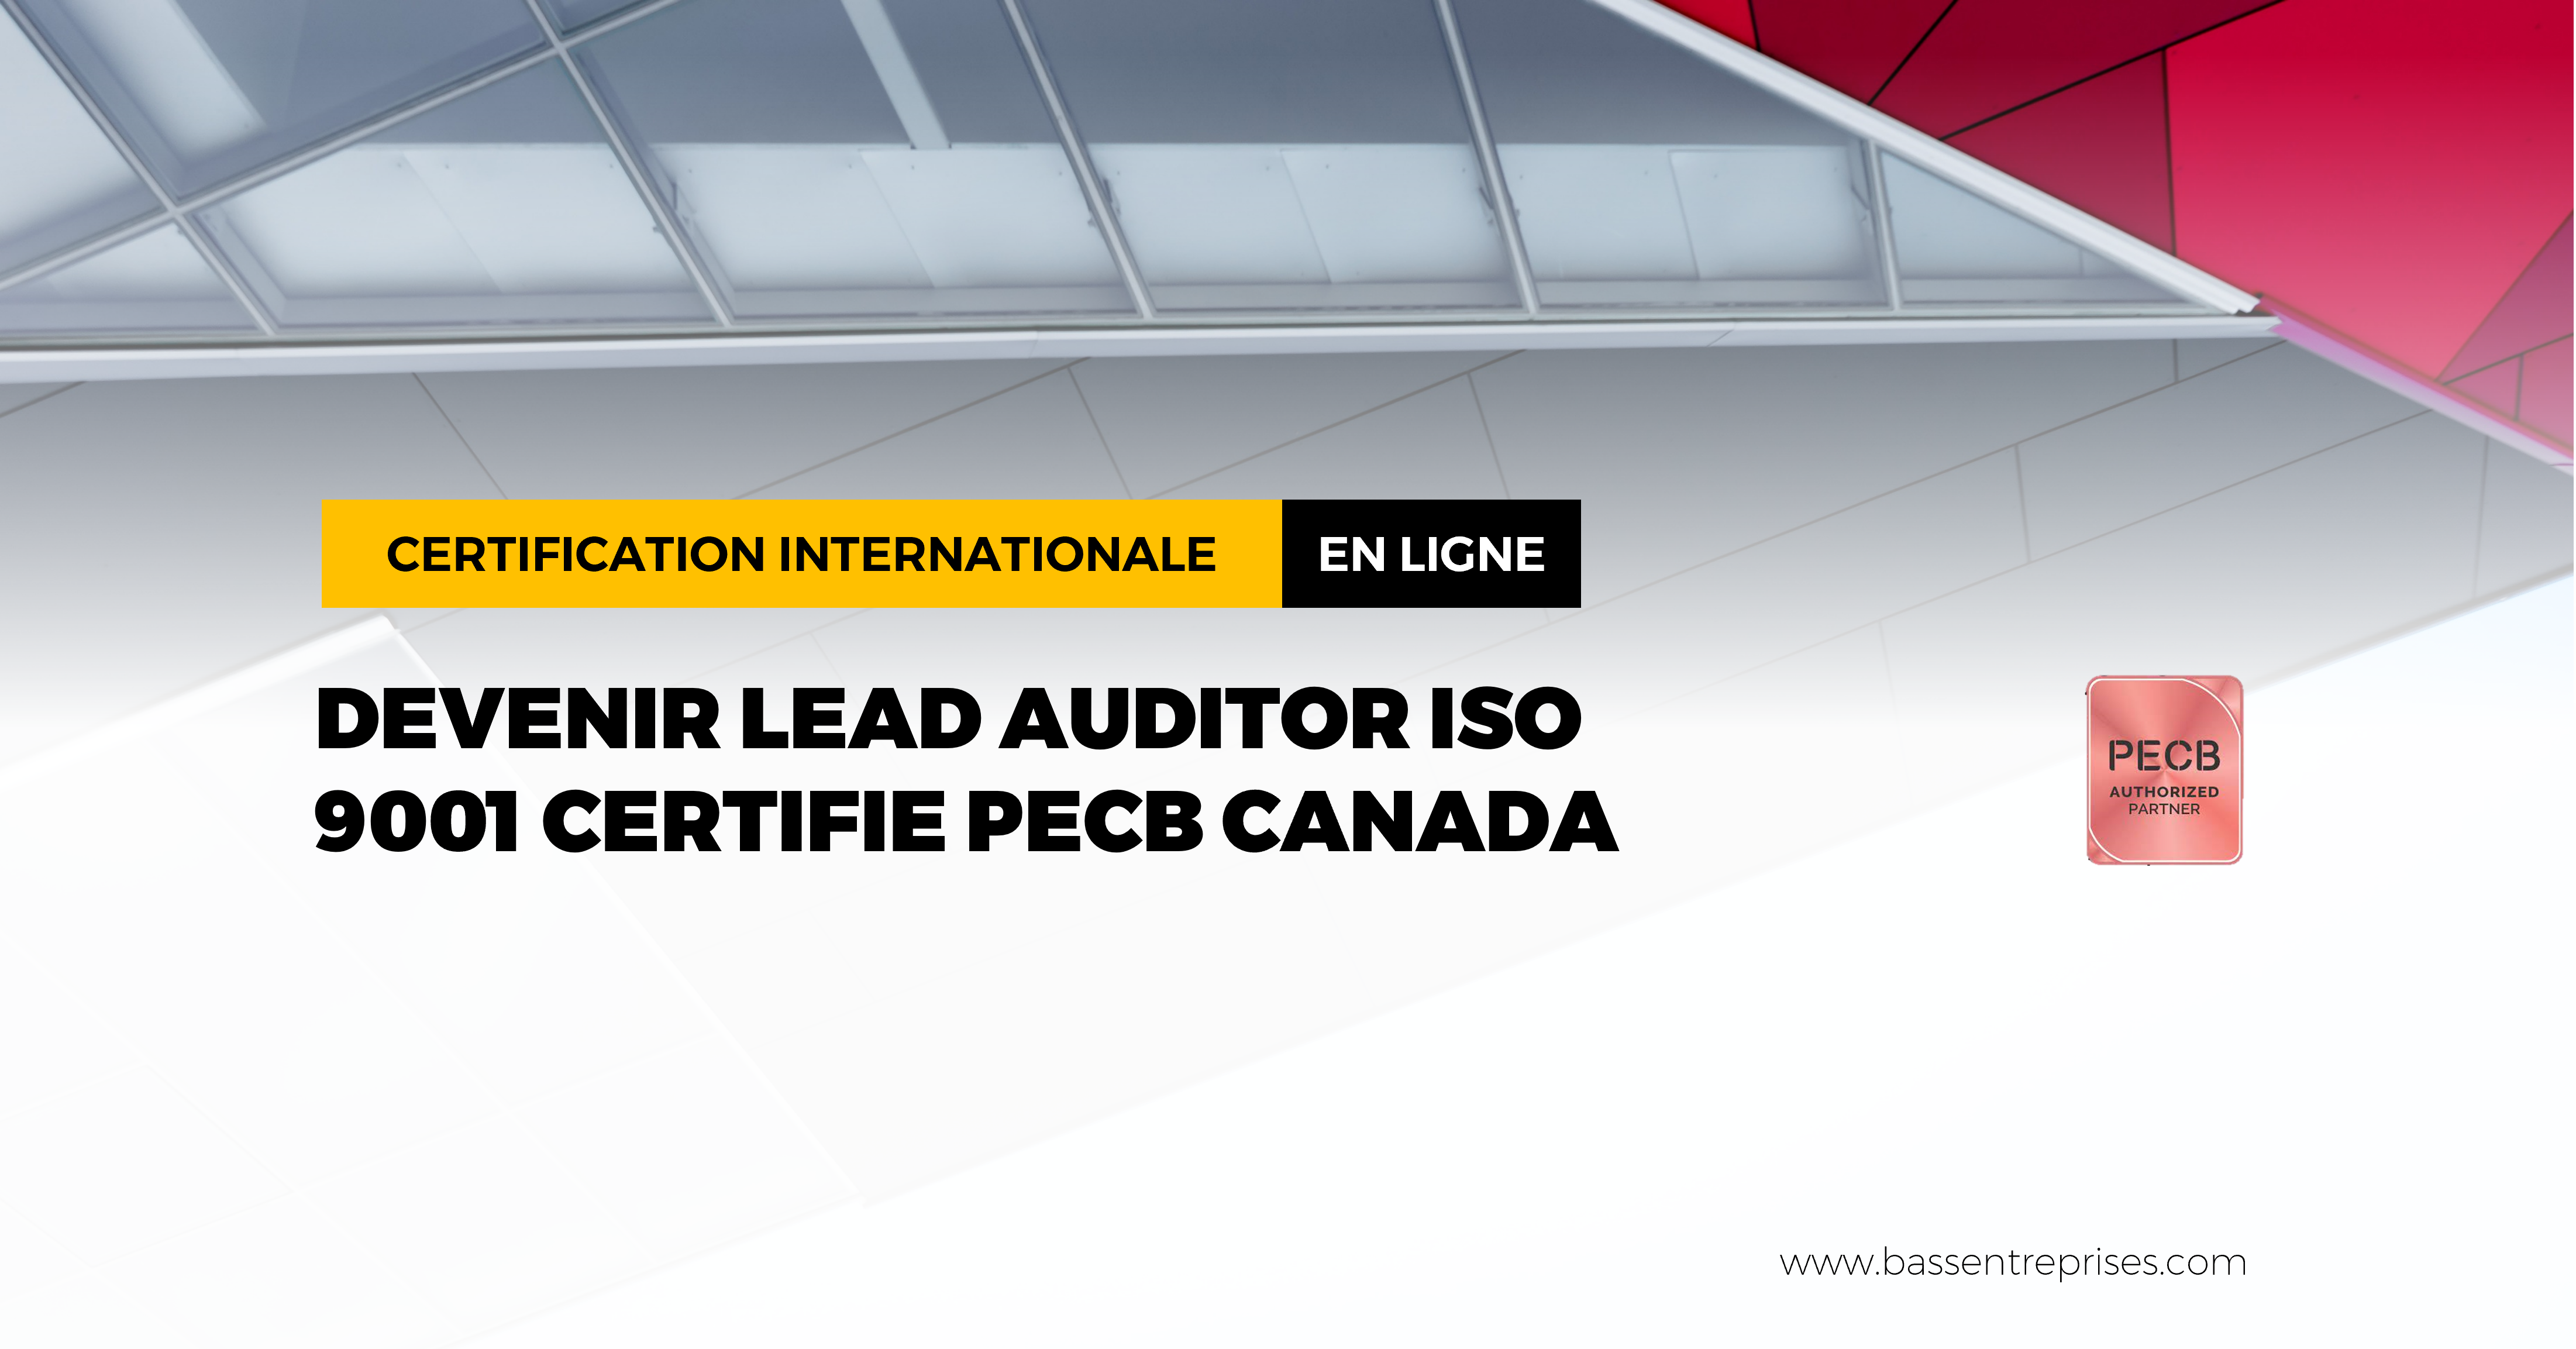 DEVENIR LEAD AUDITOR ISO 9001 CERTIFIE PECB CANADA